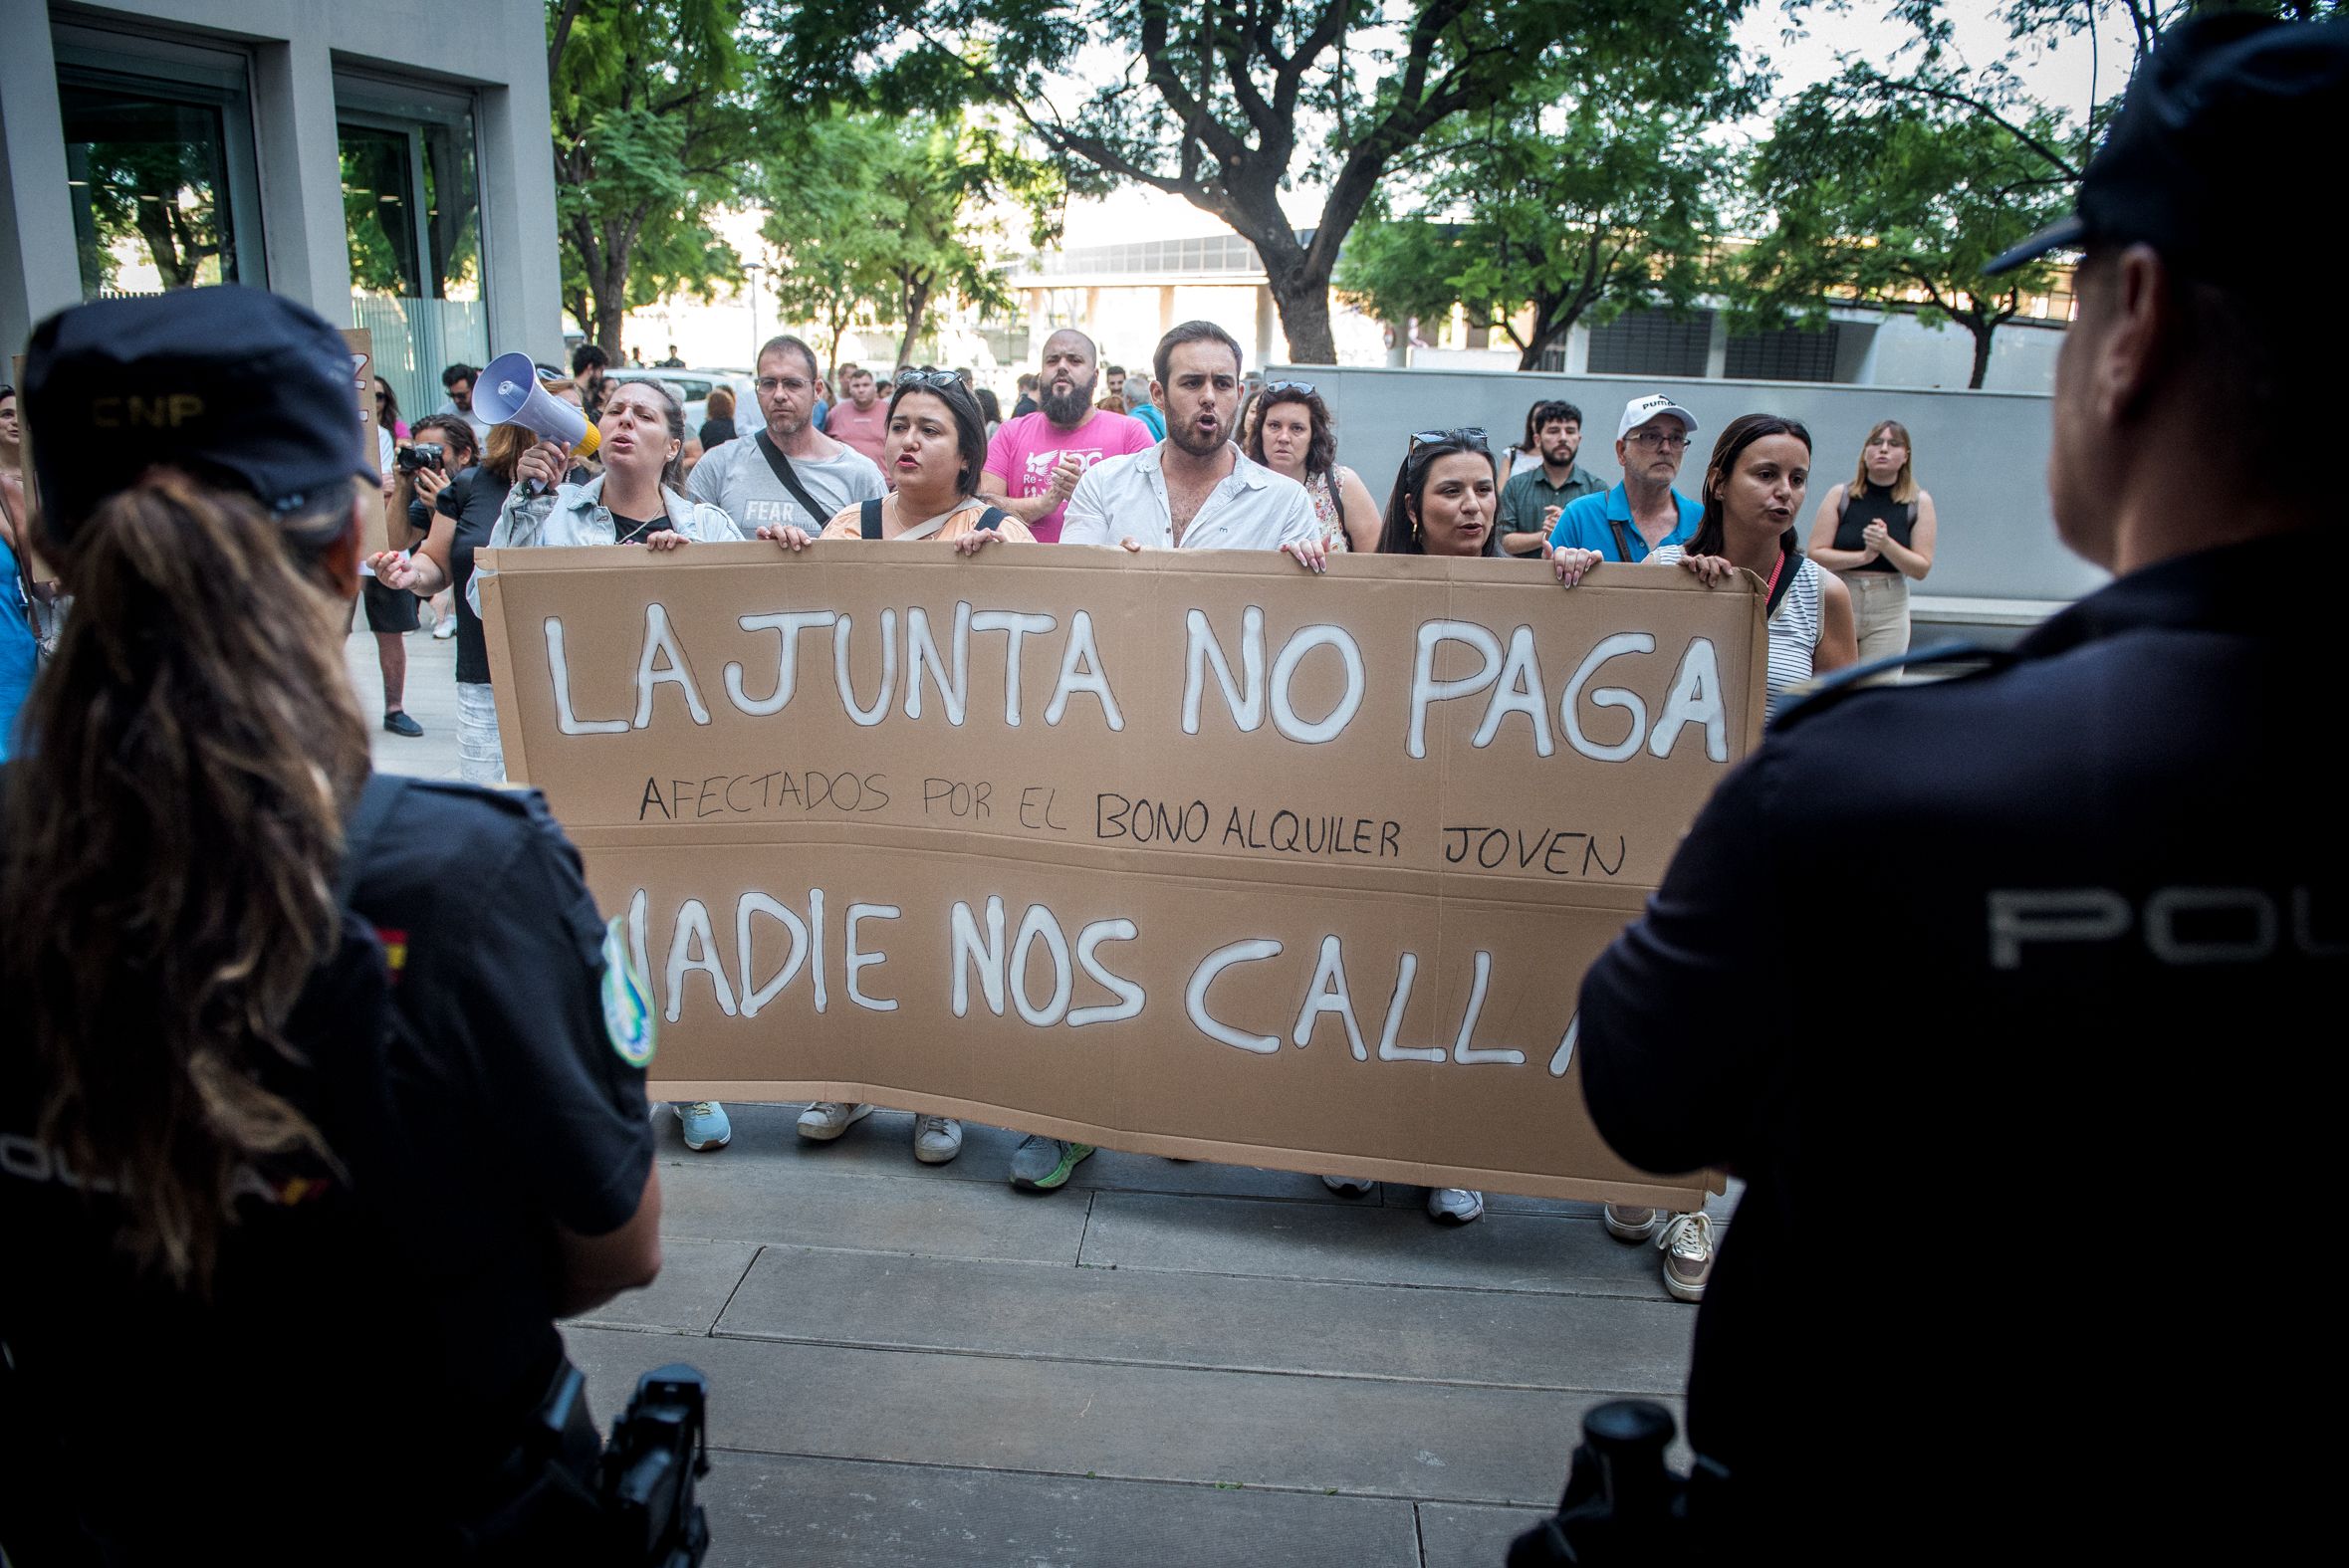 Jóvenes afectados por el Bono Alquiler en la manifestación frente a la consejería de Fomento y Vivienda.